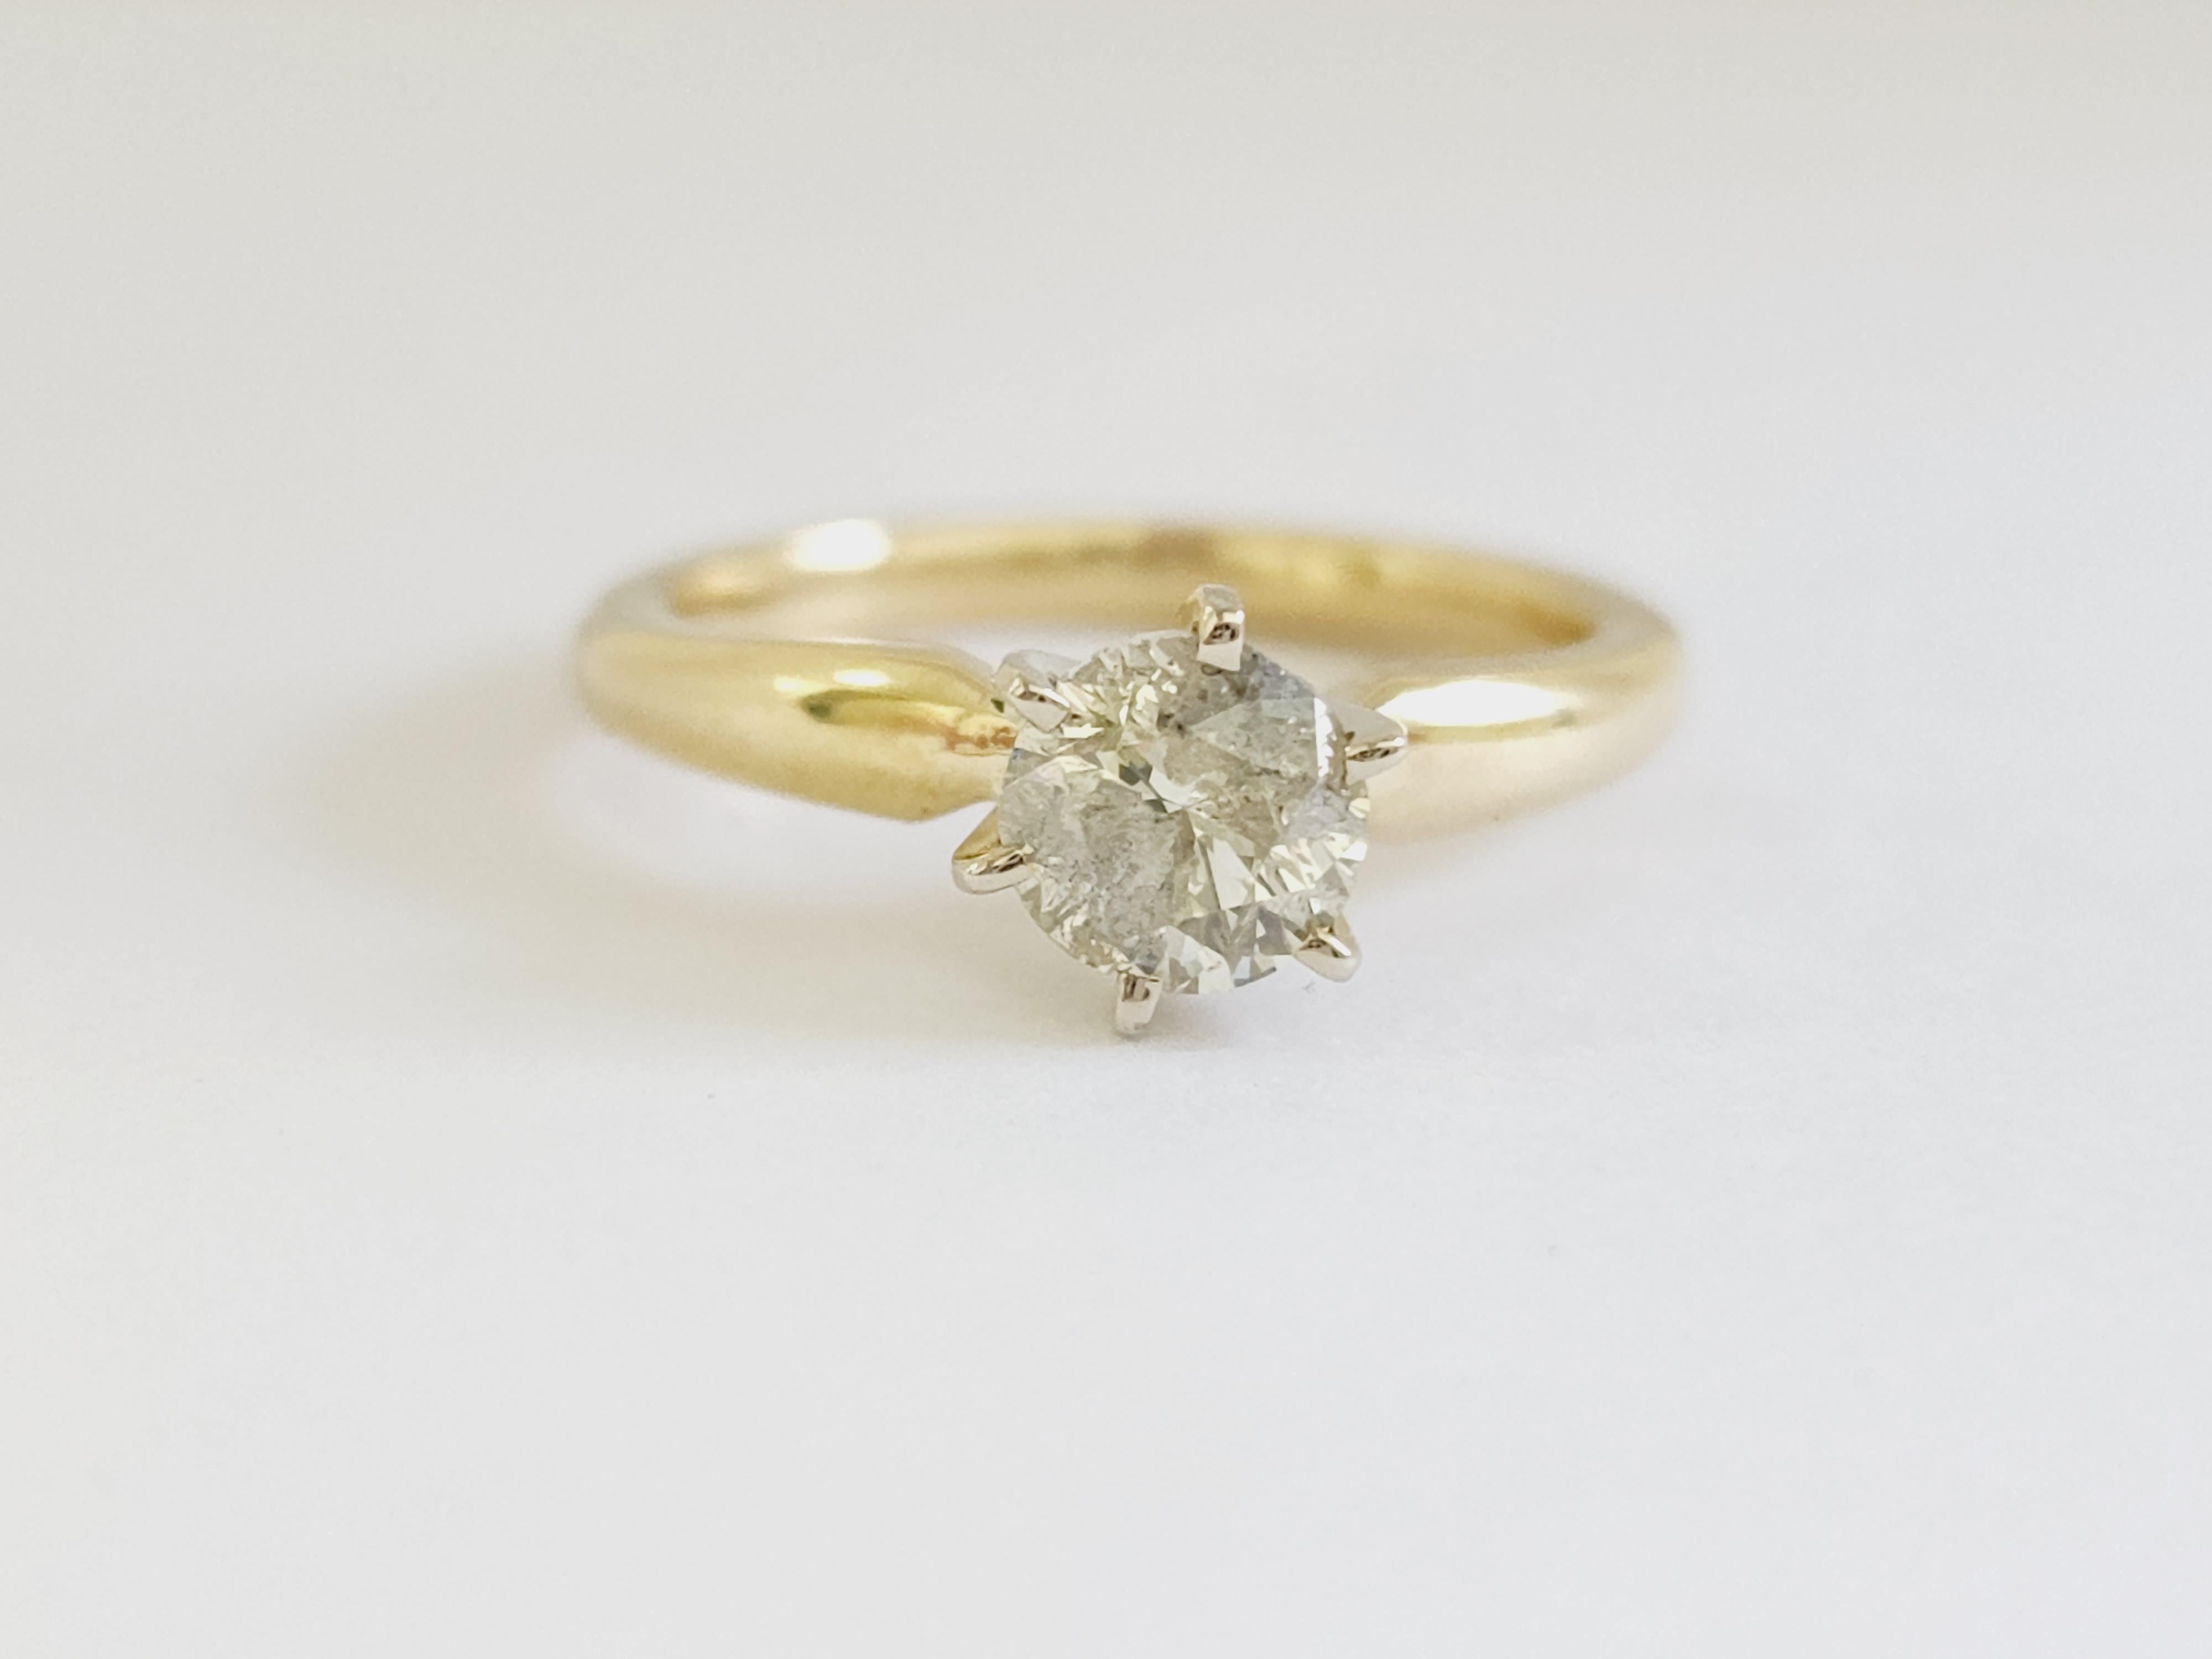 GIA 1,01 ct runder Brillantschliff natürliche Diamanten. solitärfassung mit 6 Zacken, gefasst in 14 Karat Gelbgold. Ring Größe 7